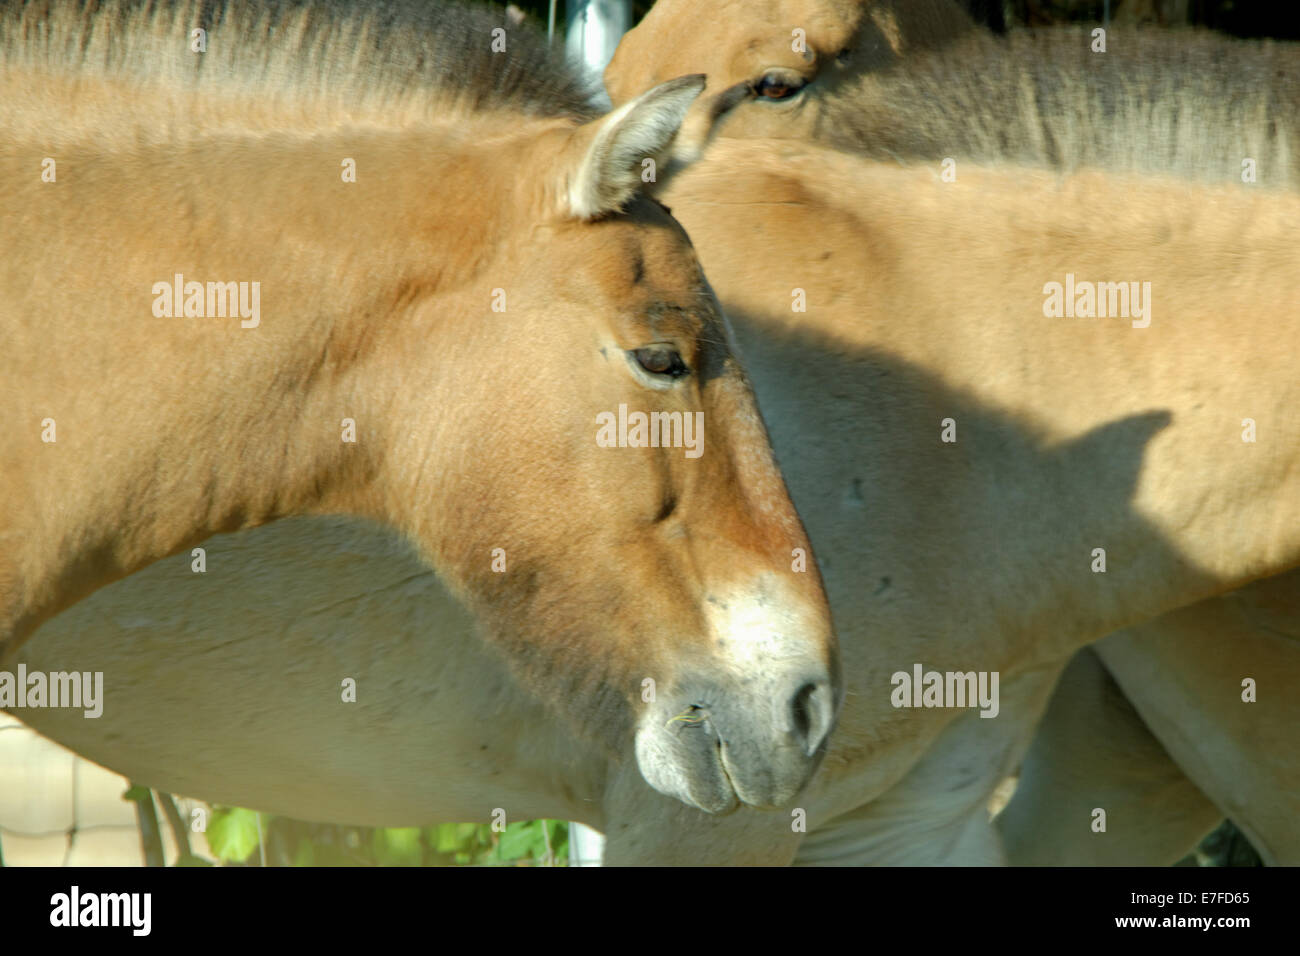 Cavallo di Przewalski o Dzungarian cavallo, è una rara e minacciata di sottospecie di cavallo selvatico (Equus ferus). Foto Stock